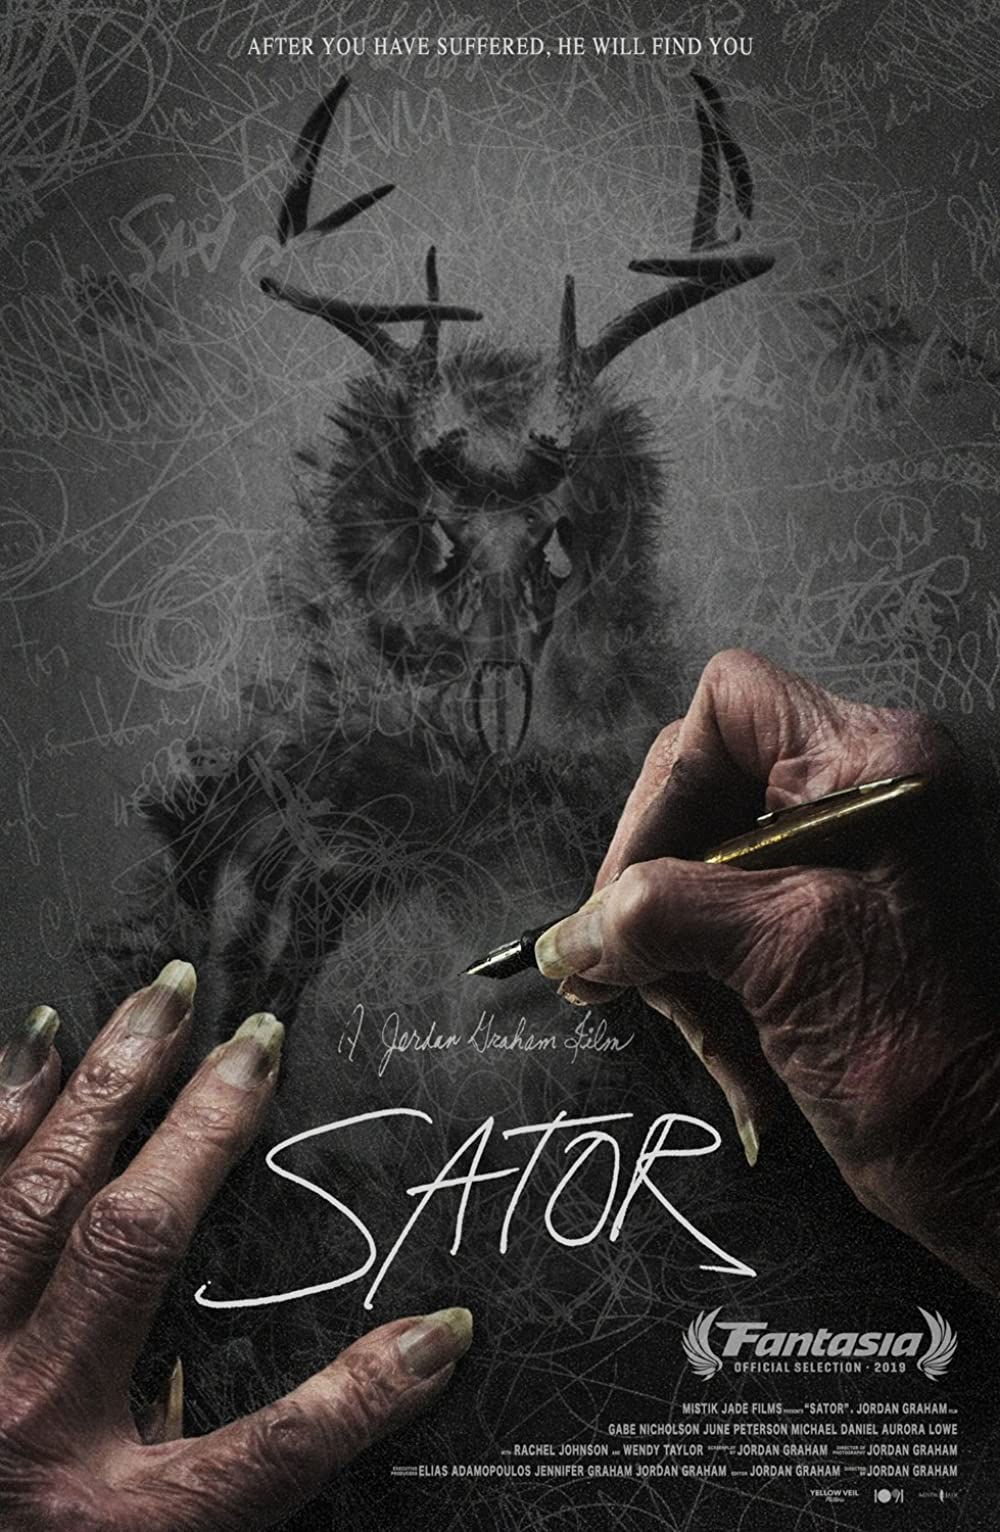 4-فیلم ساتور 2021 Sator: تاخیر در انتشار از 2019 تا سال 2021 برای یک فیلم ترسناک پرهیجان!